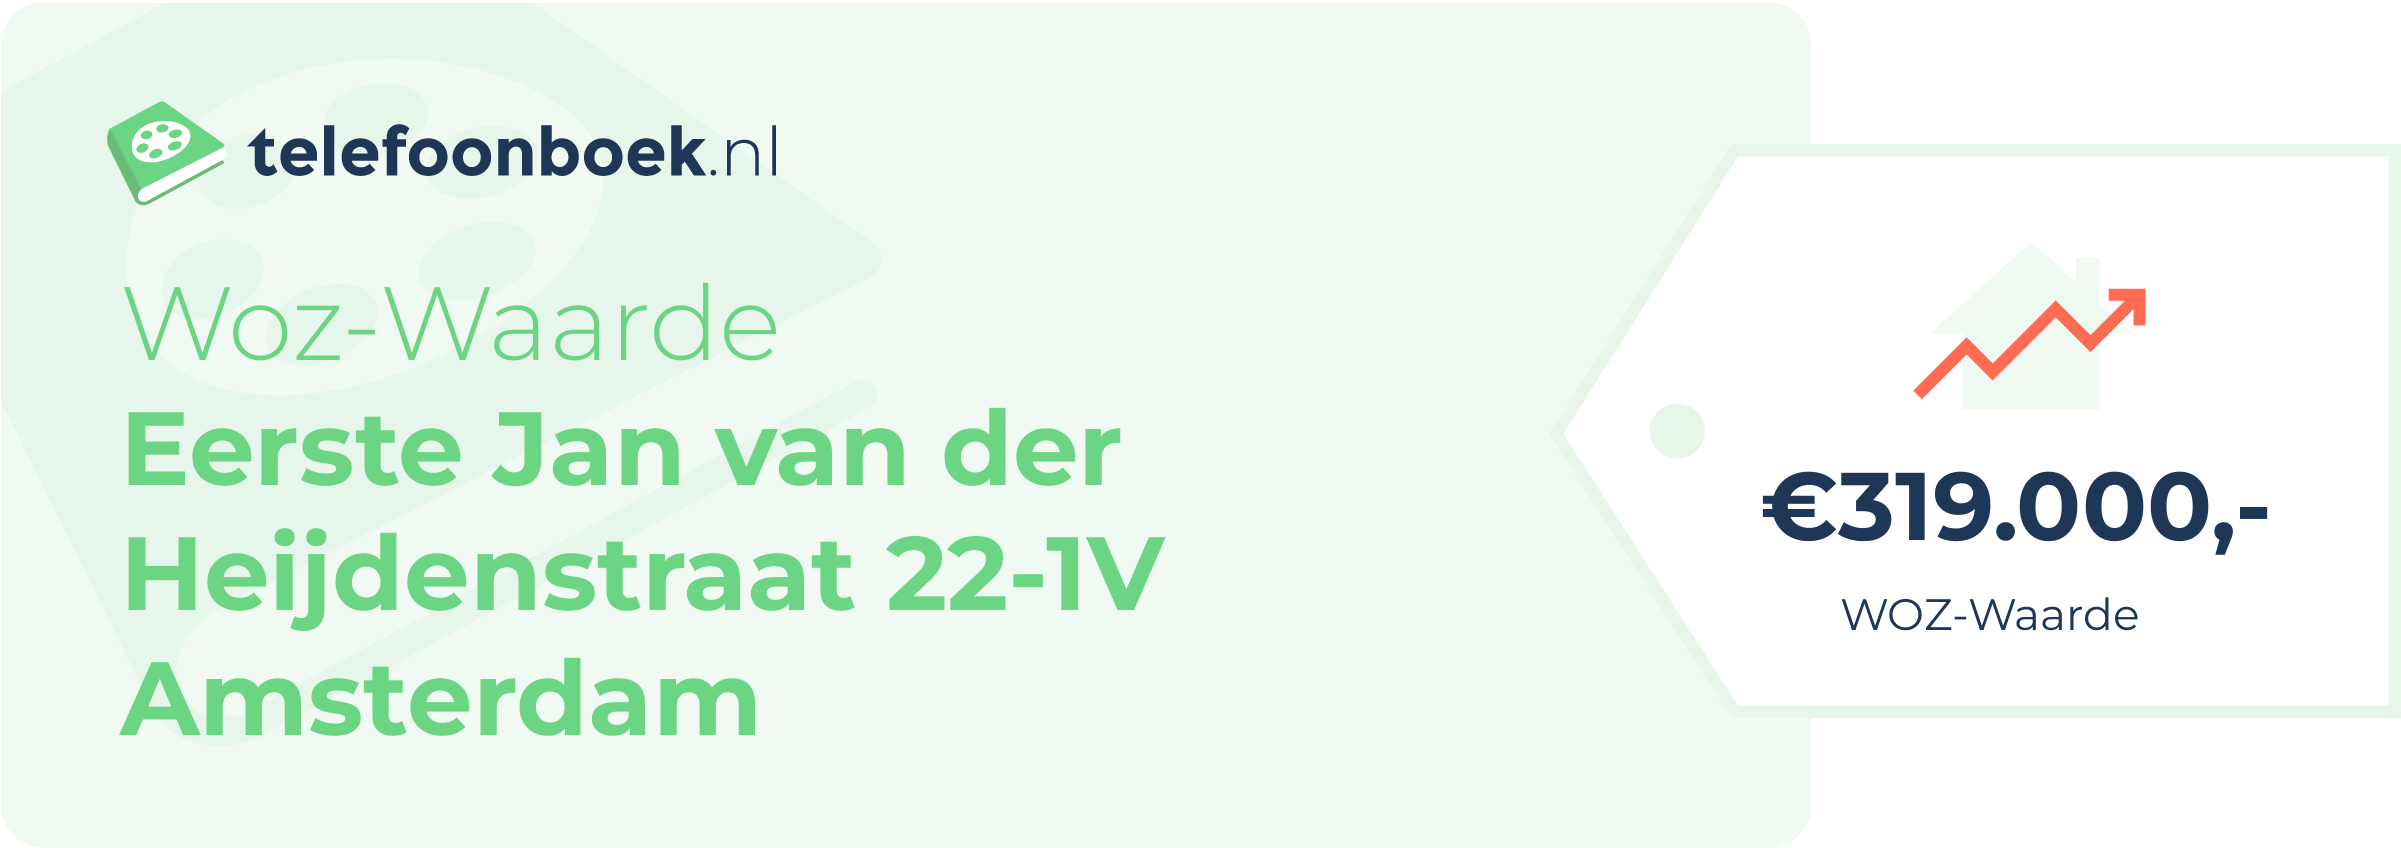 WOZ-waarde Eerste Jan Van Der Heijdenstraat 22-1V Amsterdam